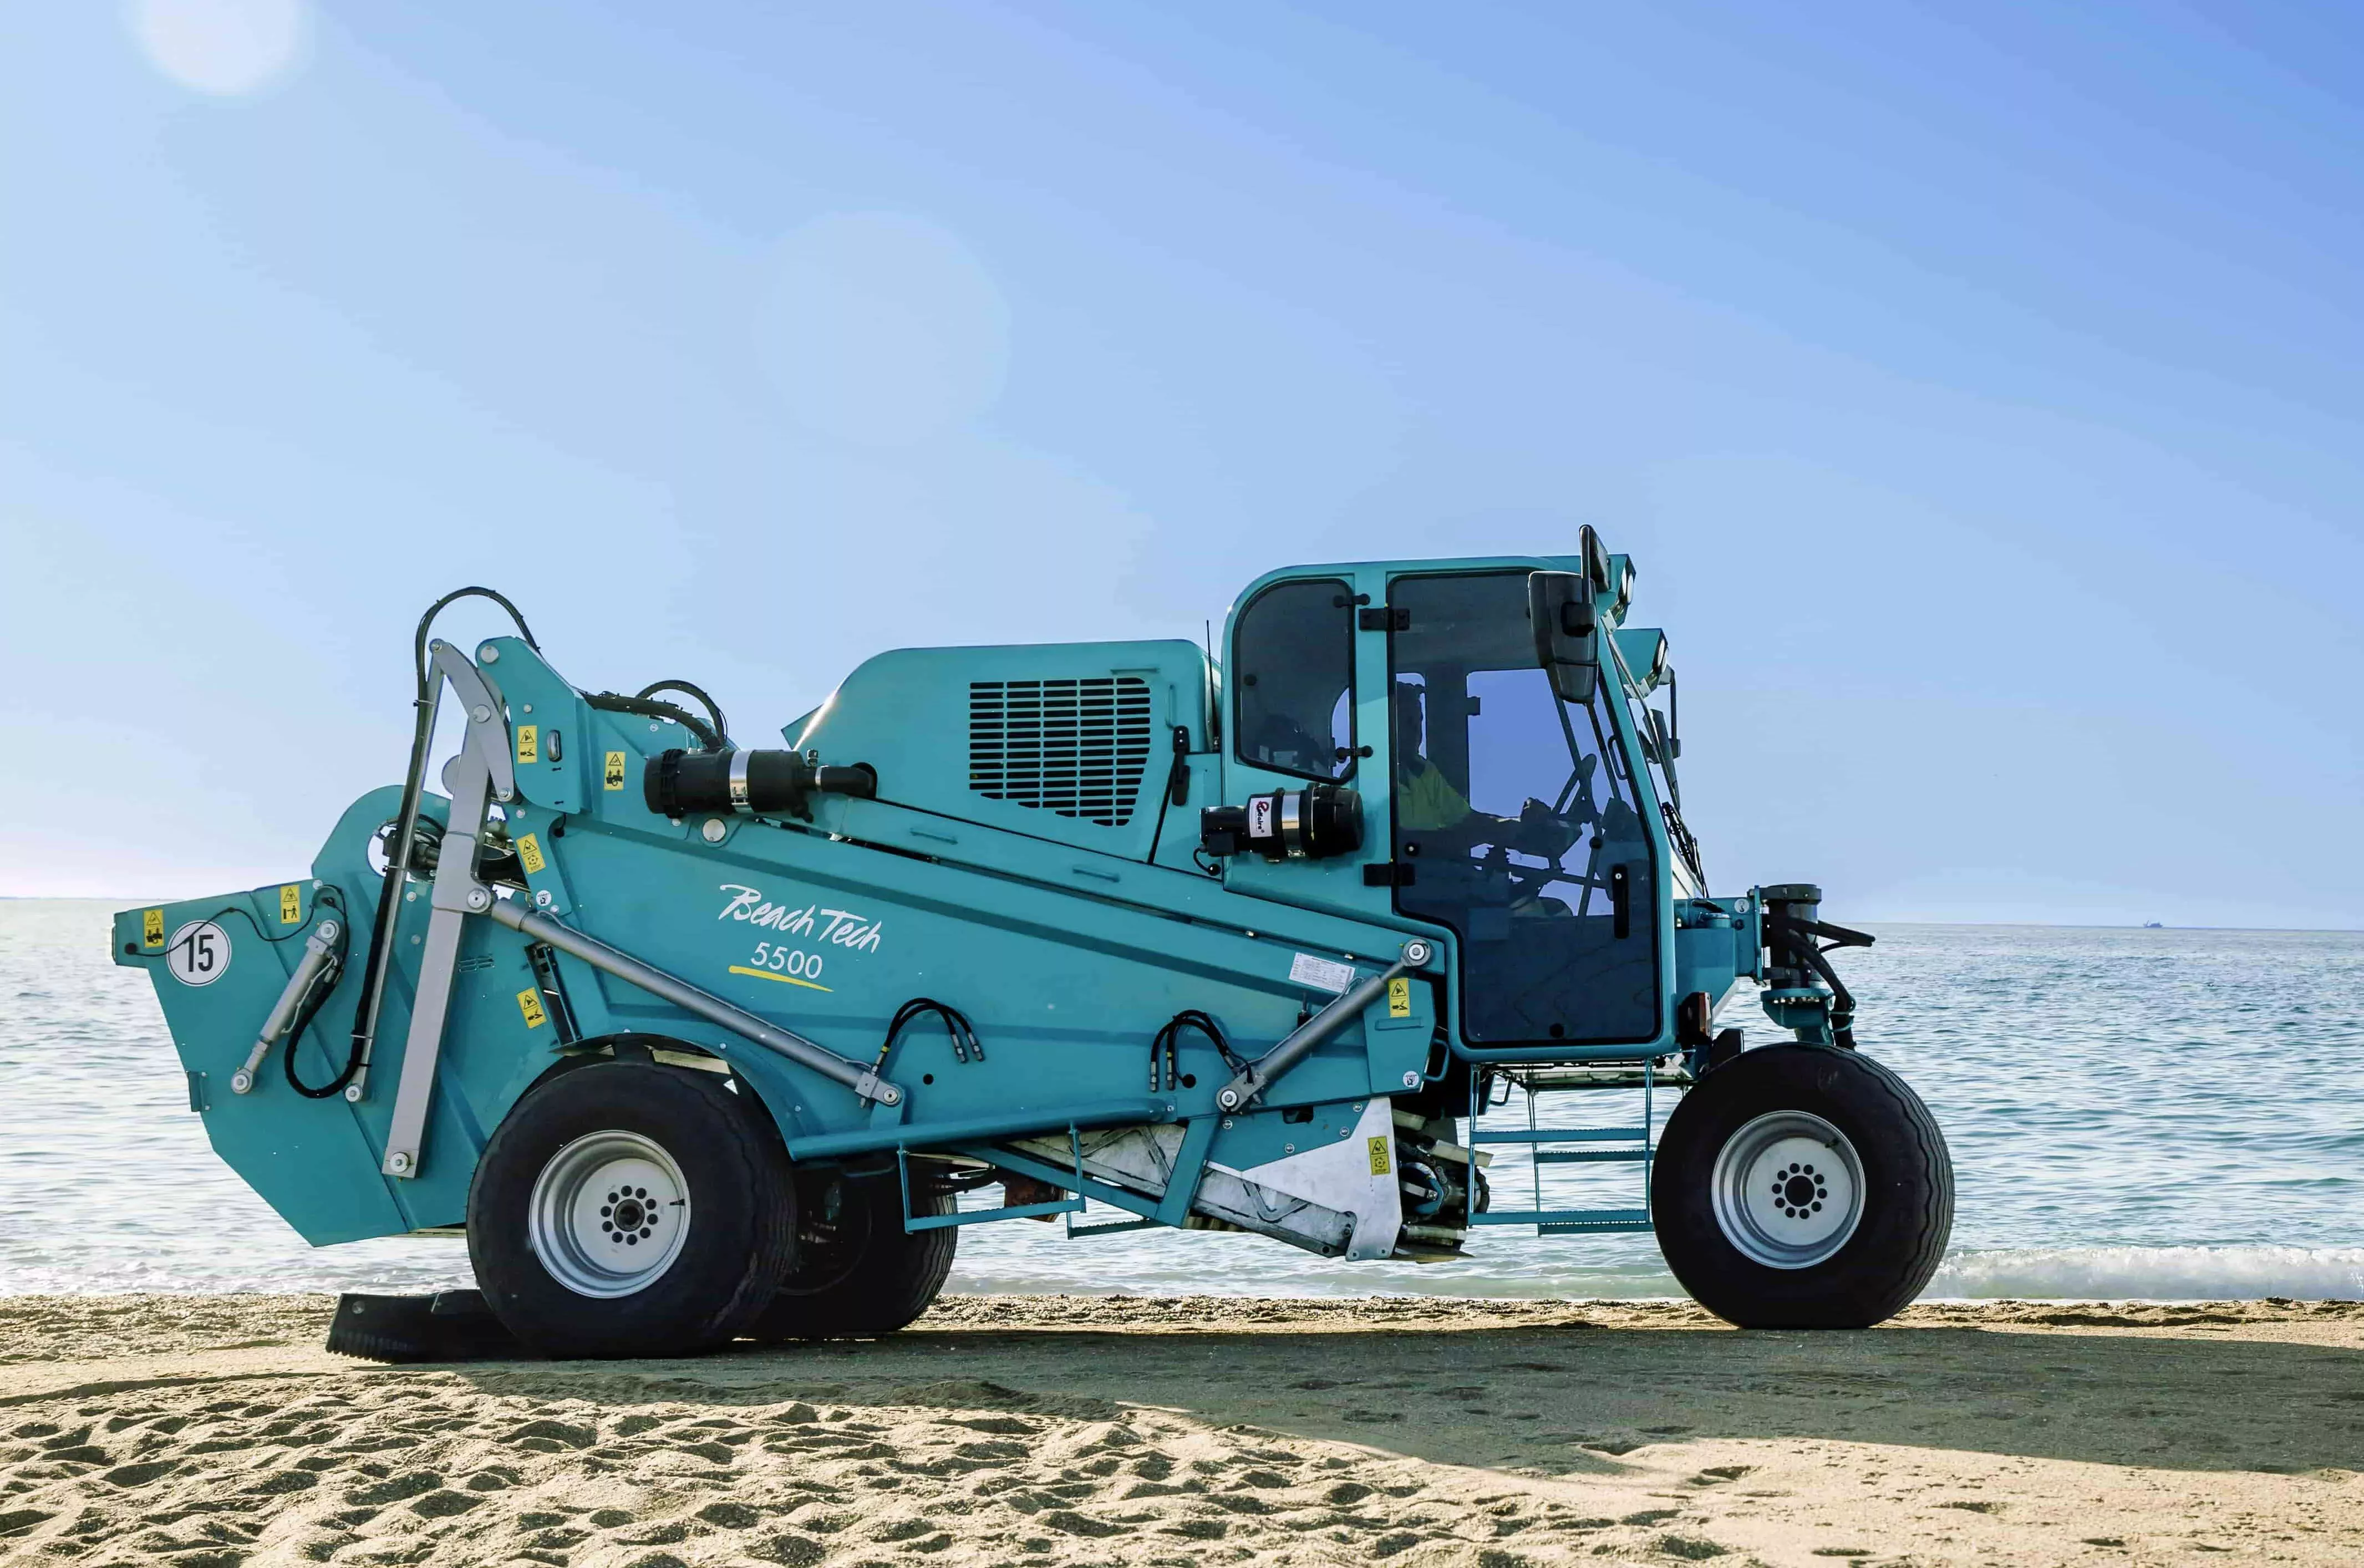 Der neue Strandreiniger BeachTech 5500 am Strand